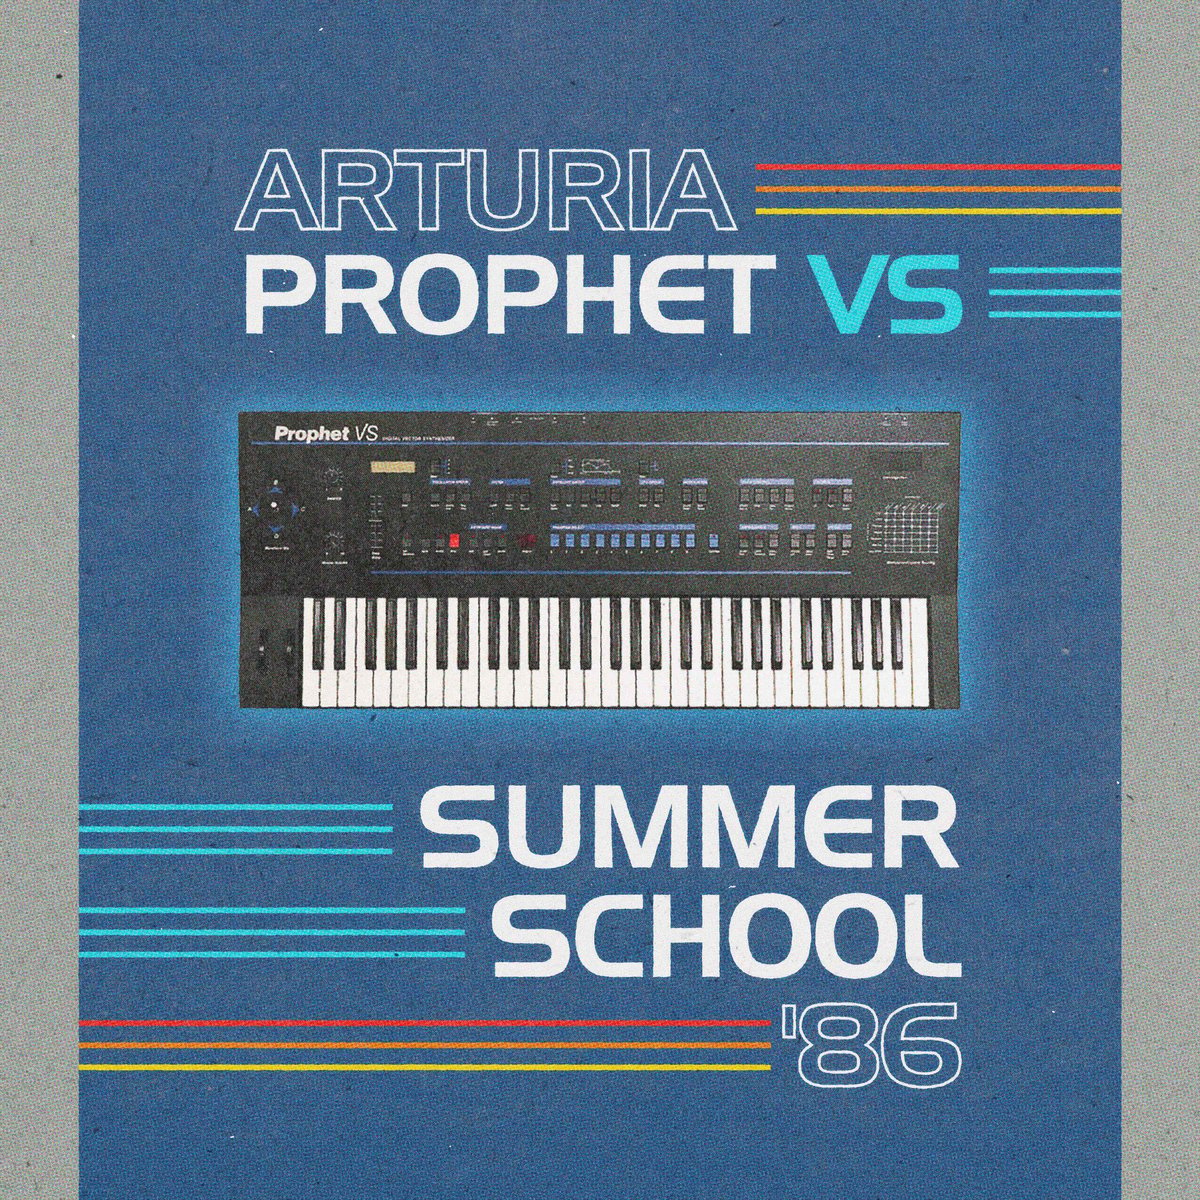 Image of  Arturia Prophet VS - Summer School '86 Sound Bank 